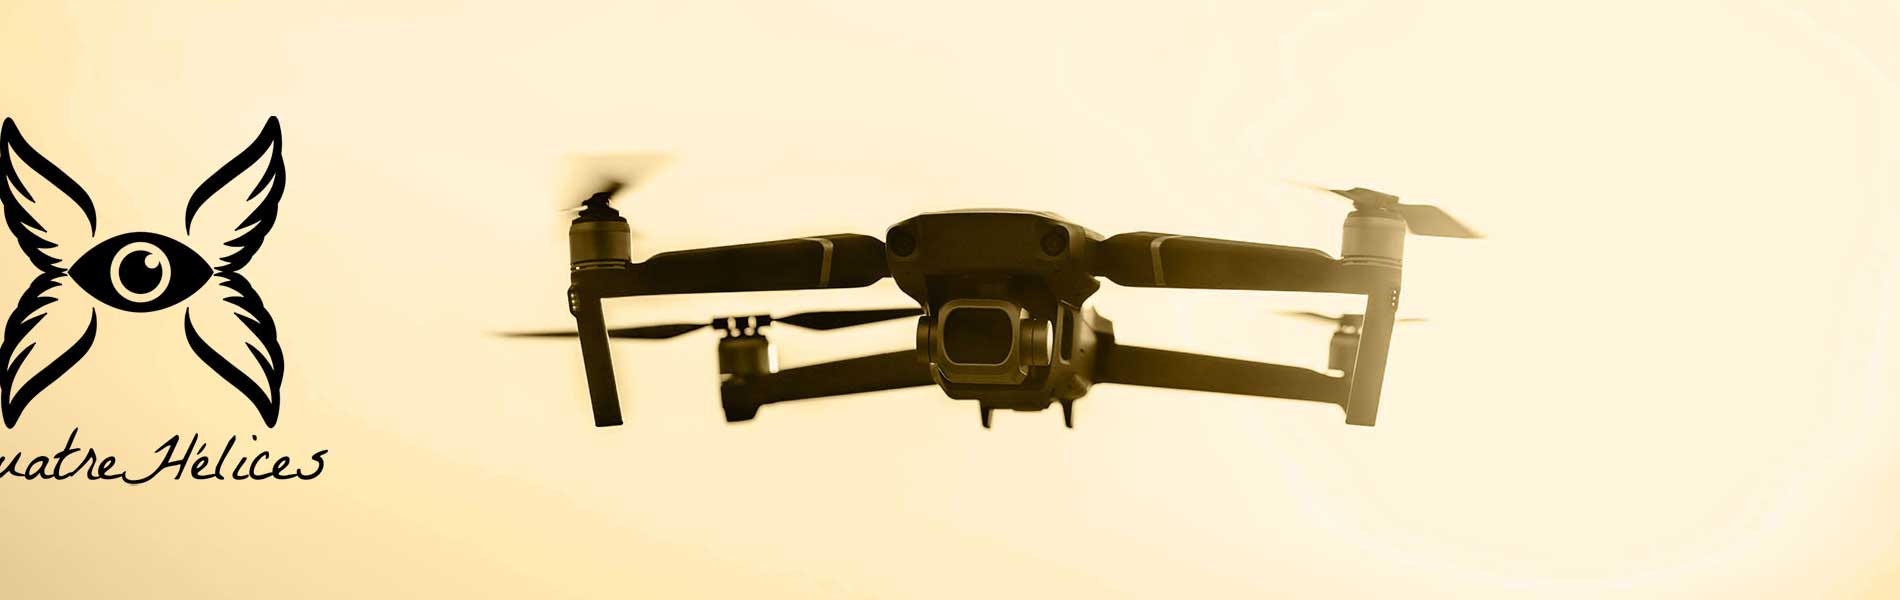 Tarif prise de vue drone